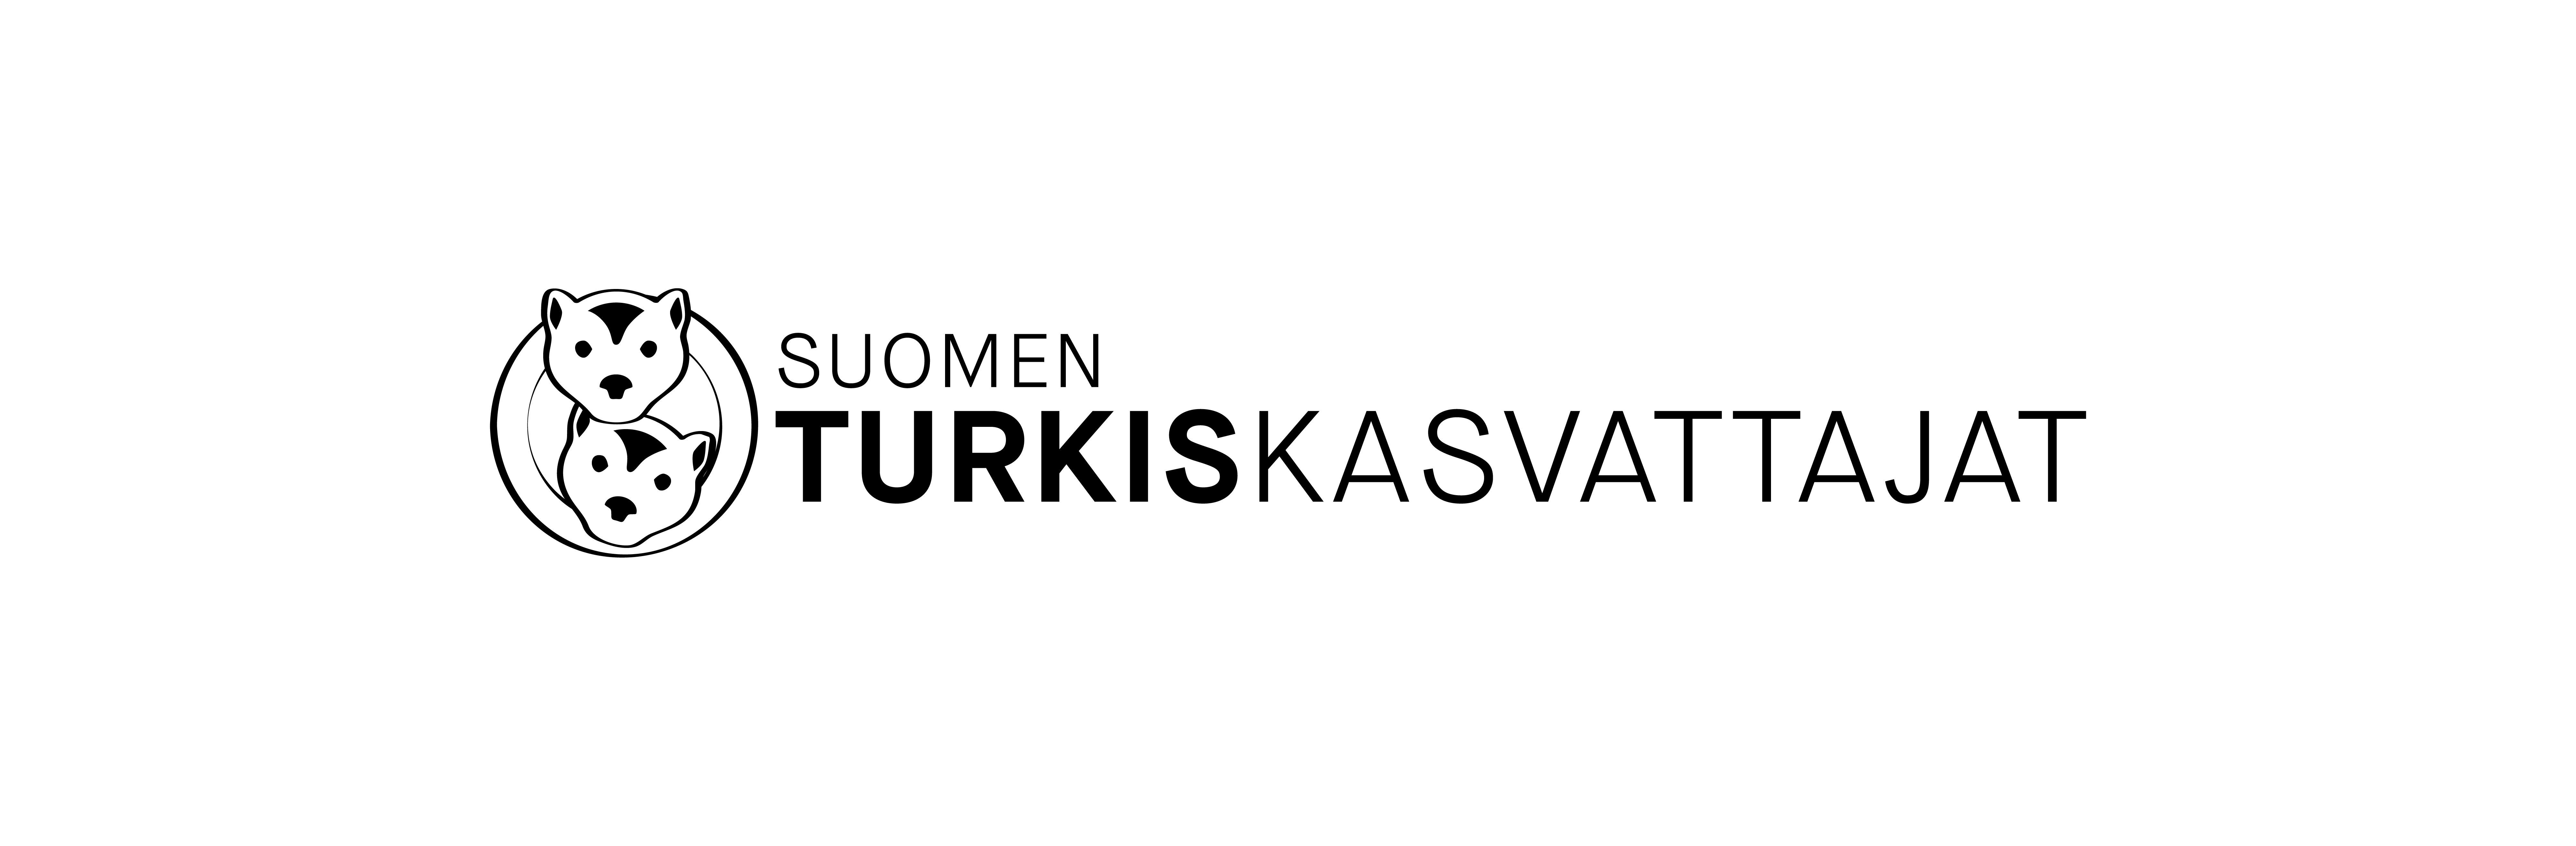 Suomen Turkiskasvattajat Logo Black